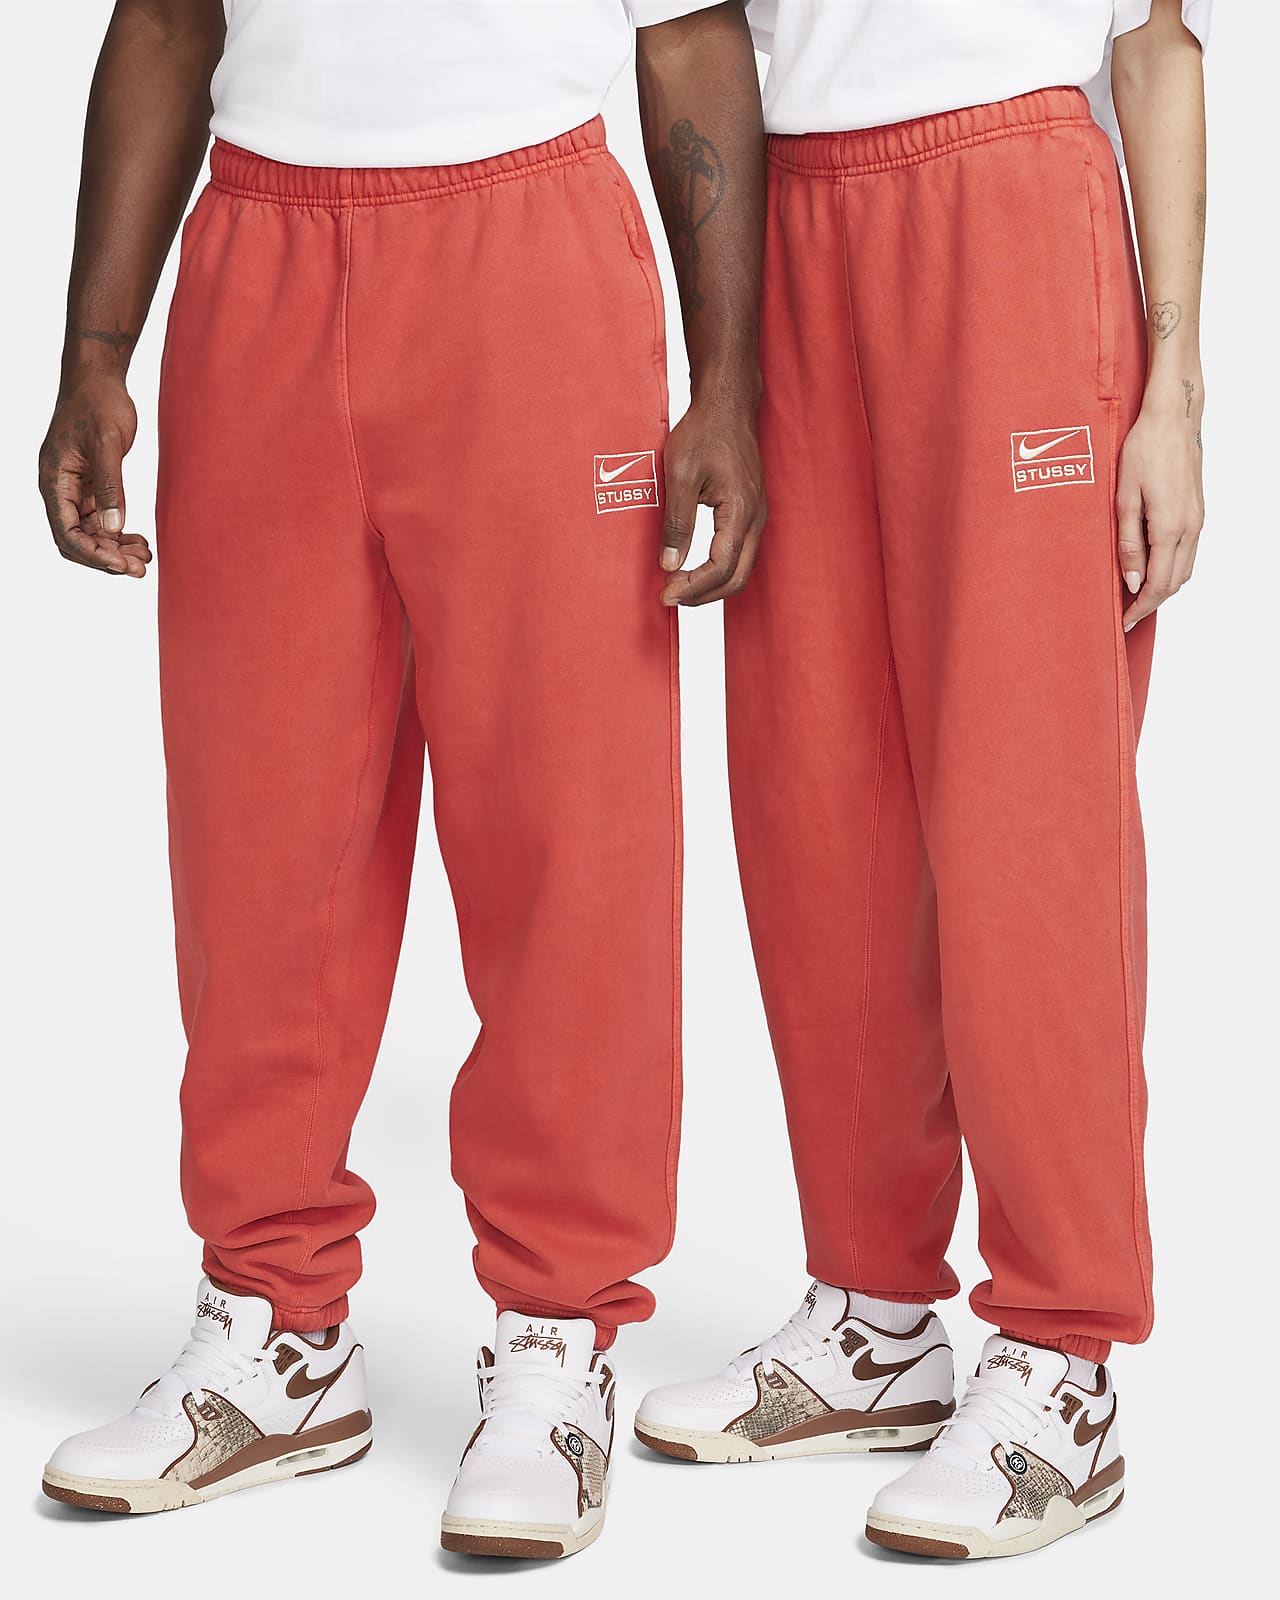 SNK【25日まで】Nike Stussy フリースパンツ Mサイズ